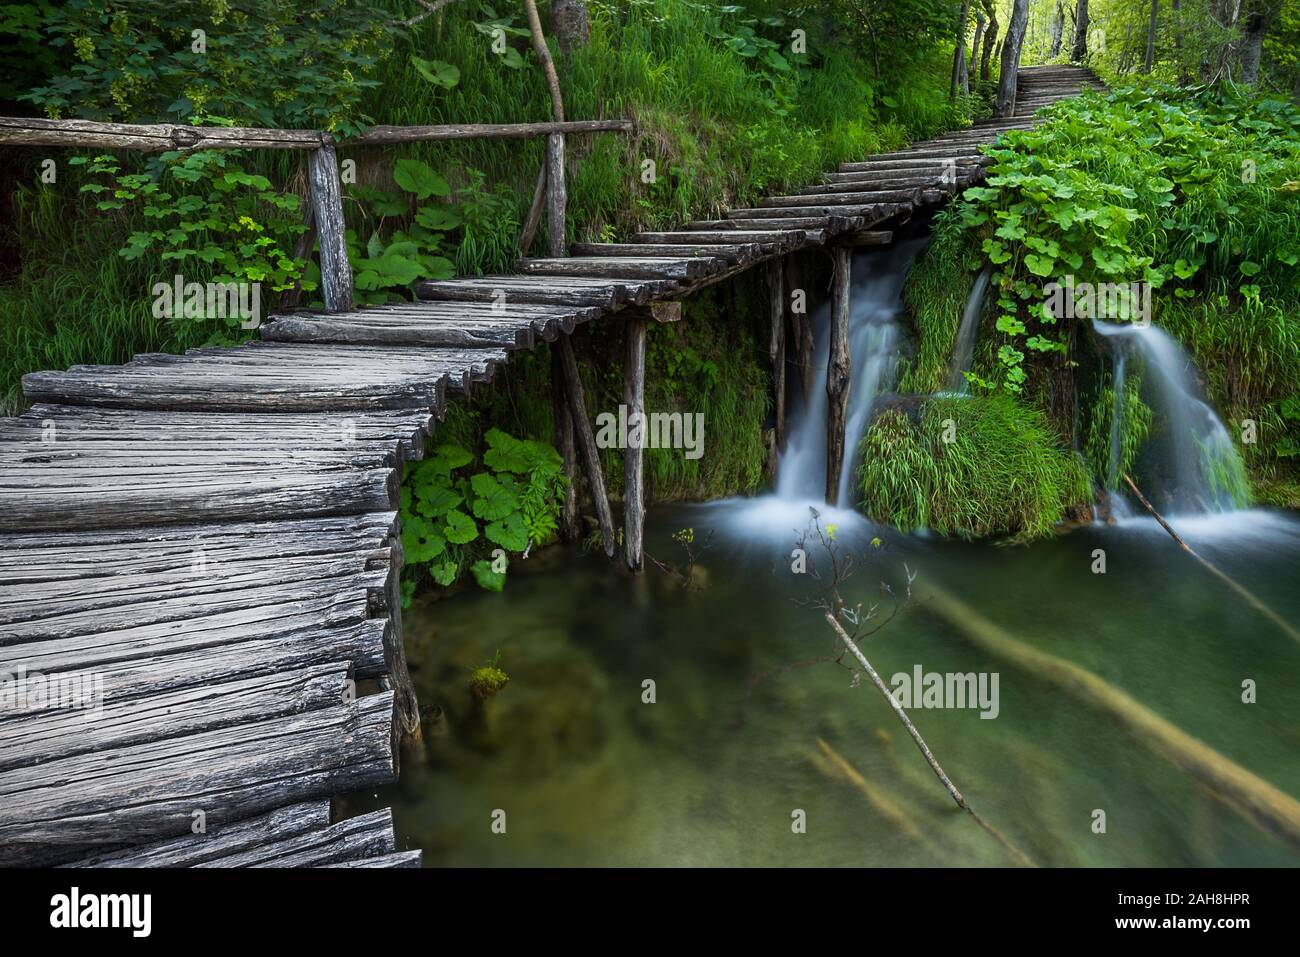 Ampia vista di una passerella in legno che si snocciola su uno stagno e in un bosco, vicino a due piccole cascate Foto Stock